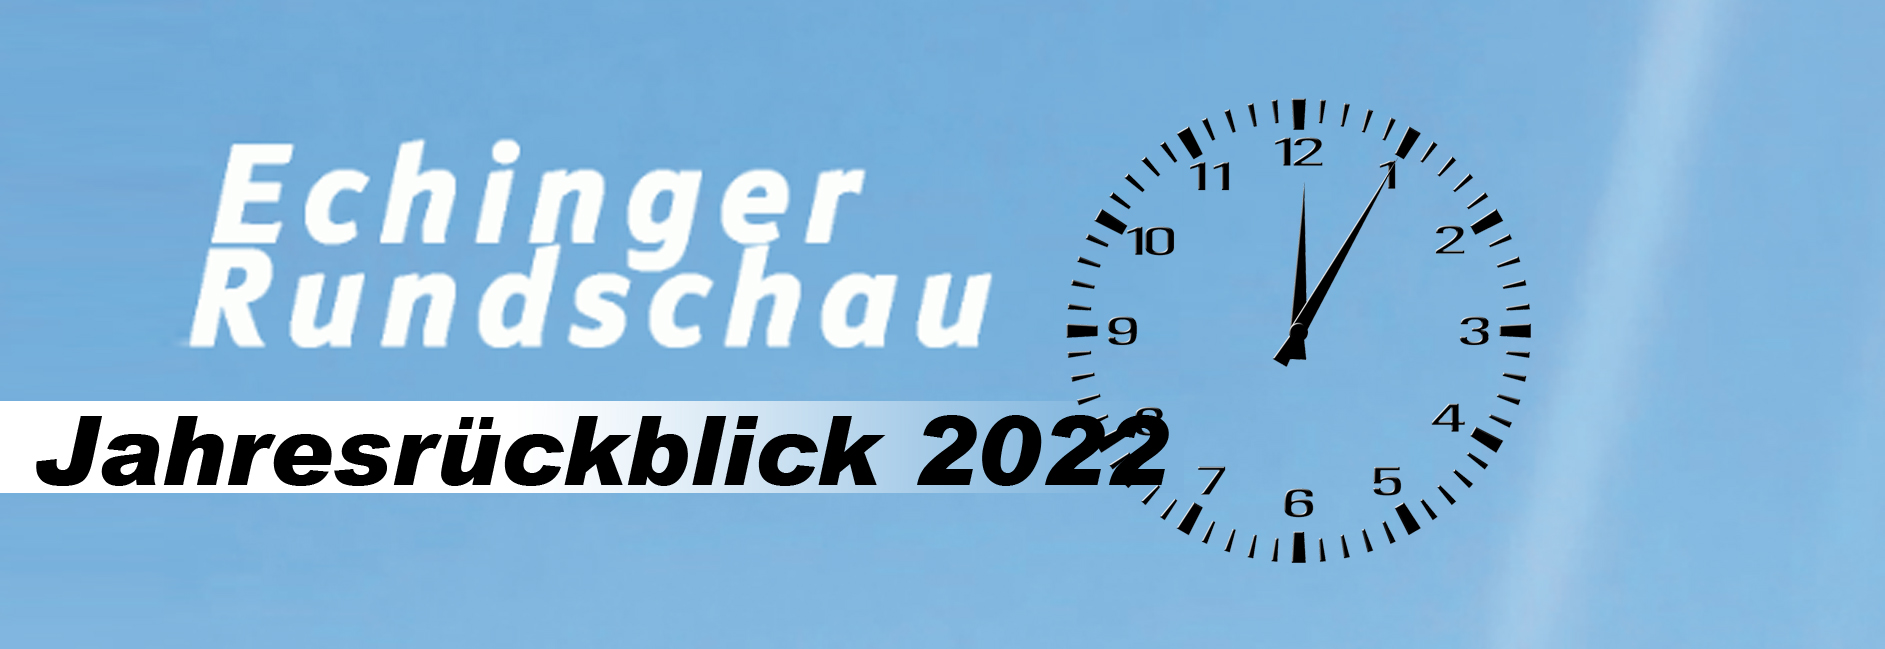 22Jahresrückblick Echinger Rundschau